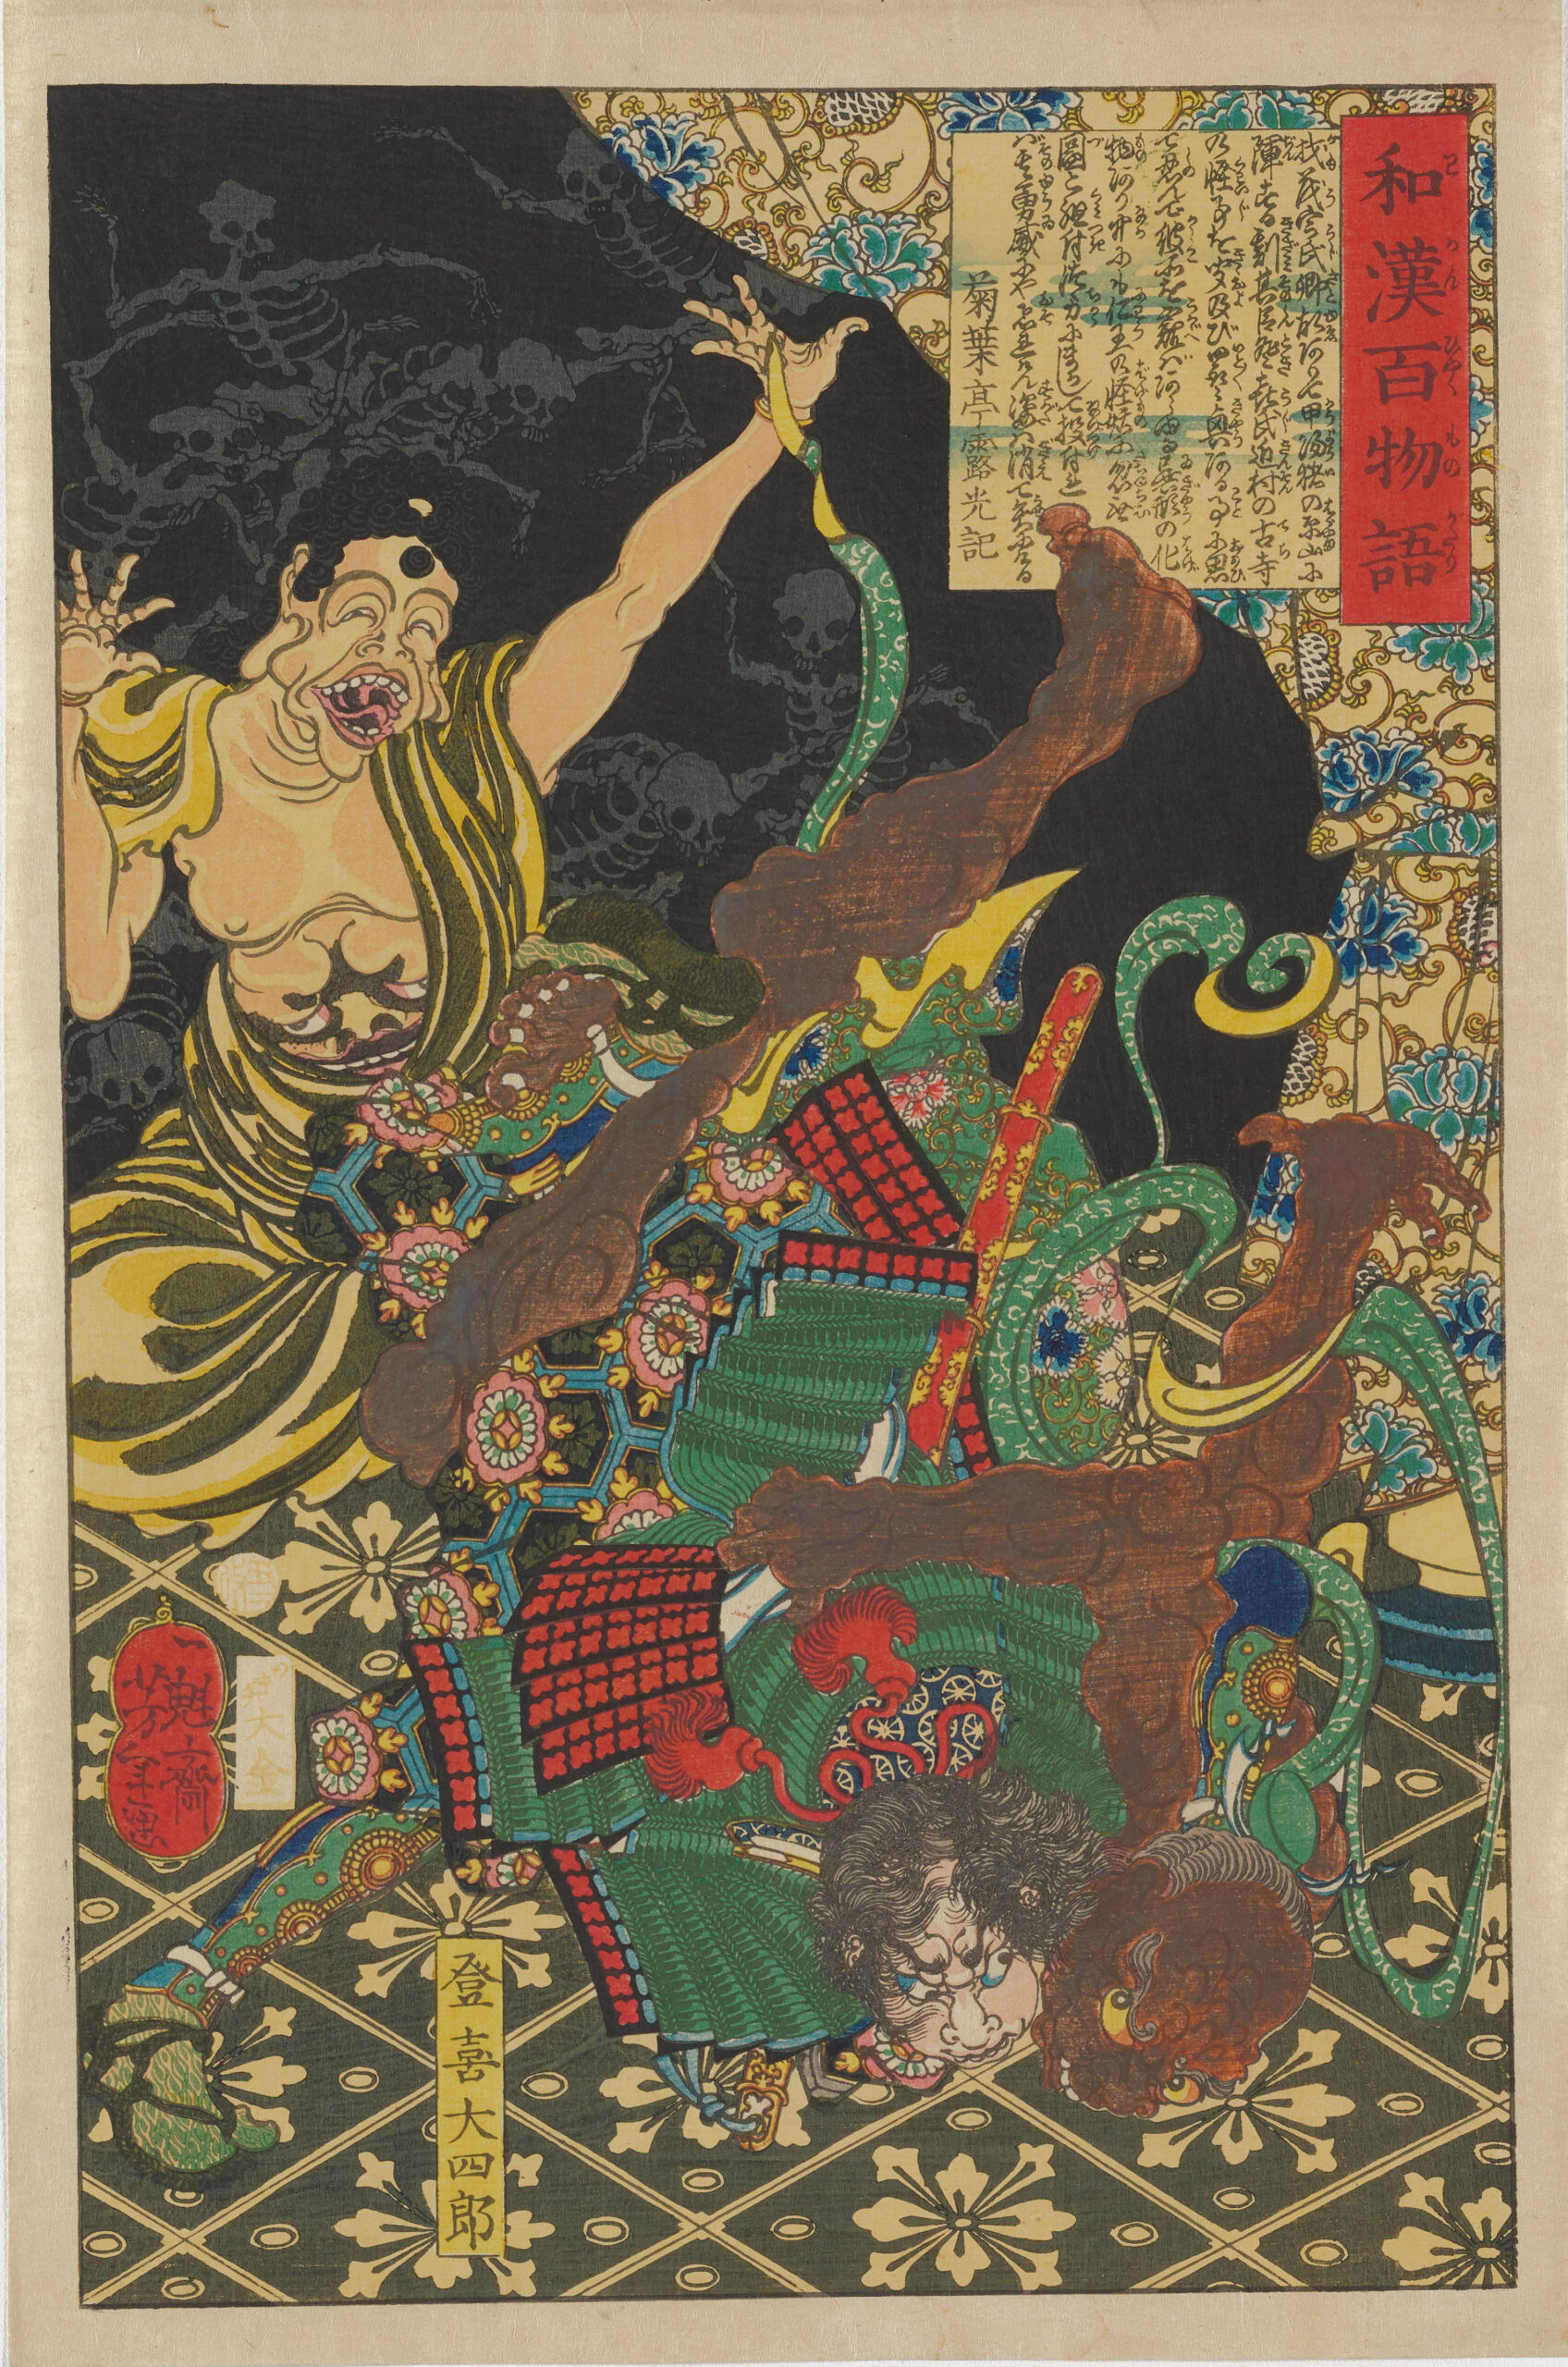 Yoshitoshi - Toki Daishiro fighting the demon - One hundred ghost stories of China and Japan